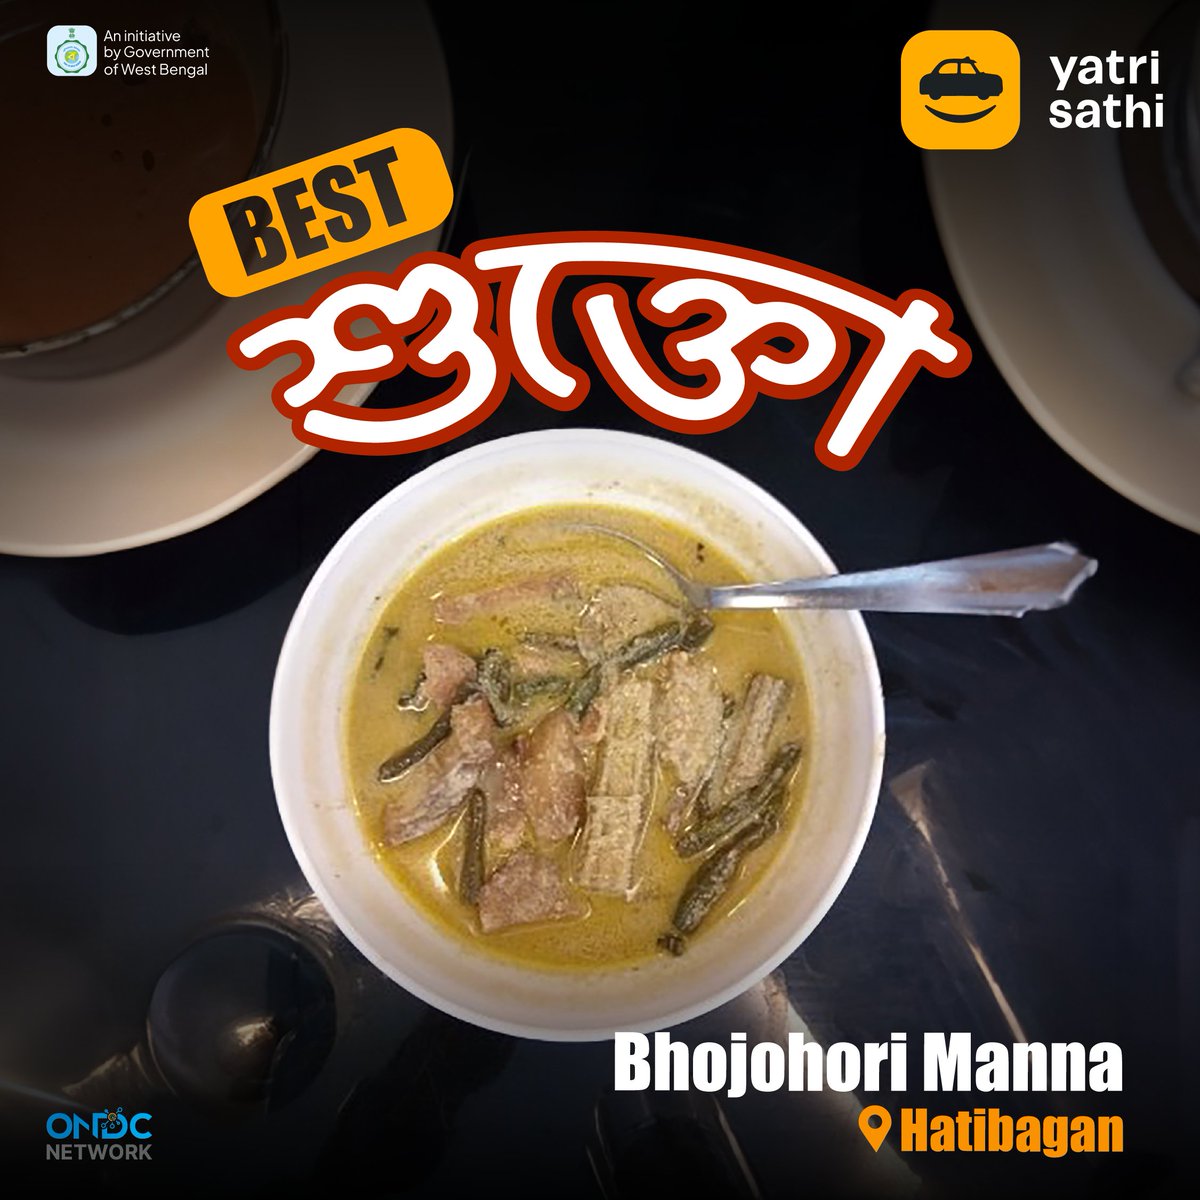 Yatri Sathi - as comfortable as a bowl of Shukto. 🍲
Book a ride to Hatibagan with Kolkata’s favourite cab booking app! 🚕

#Food #KolkataFood #YatriSathi #AmarShohorAmarSofor #FoodTrails #KolkataDiaries #StreetFood